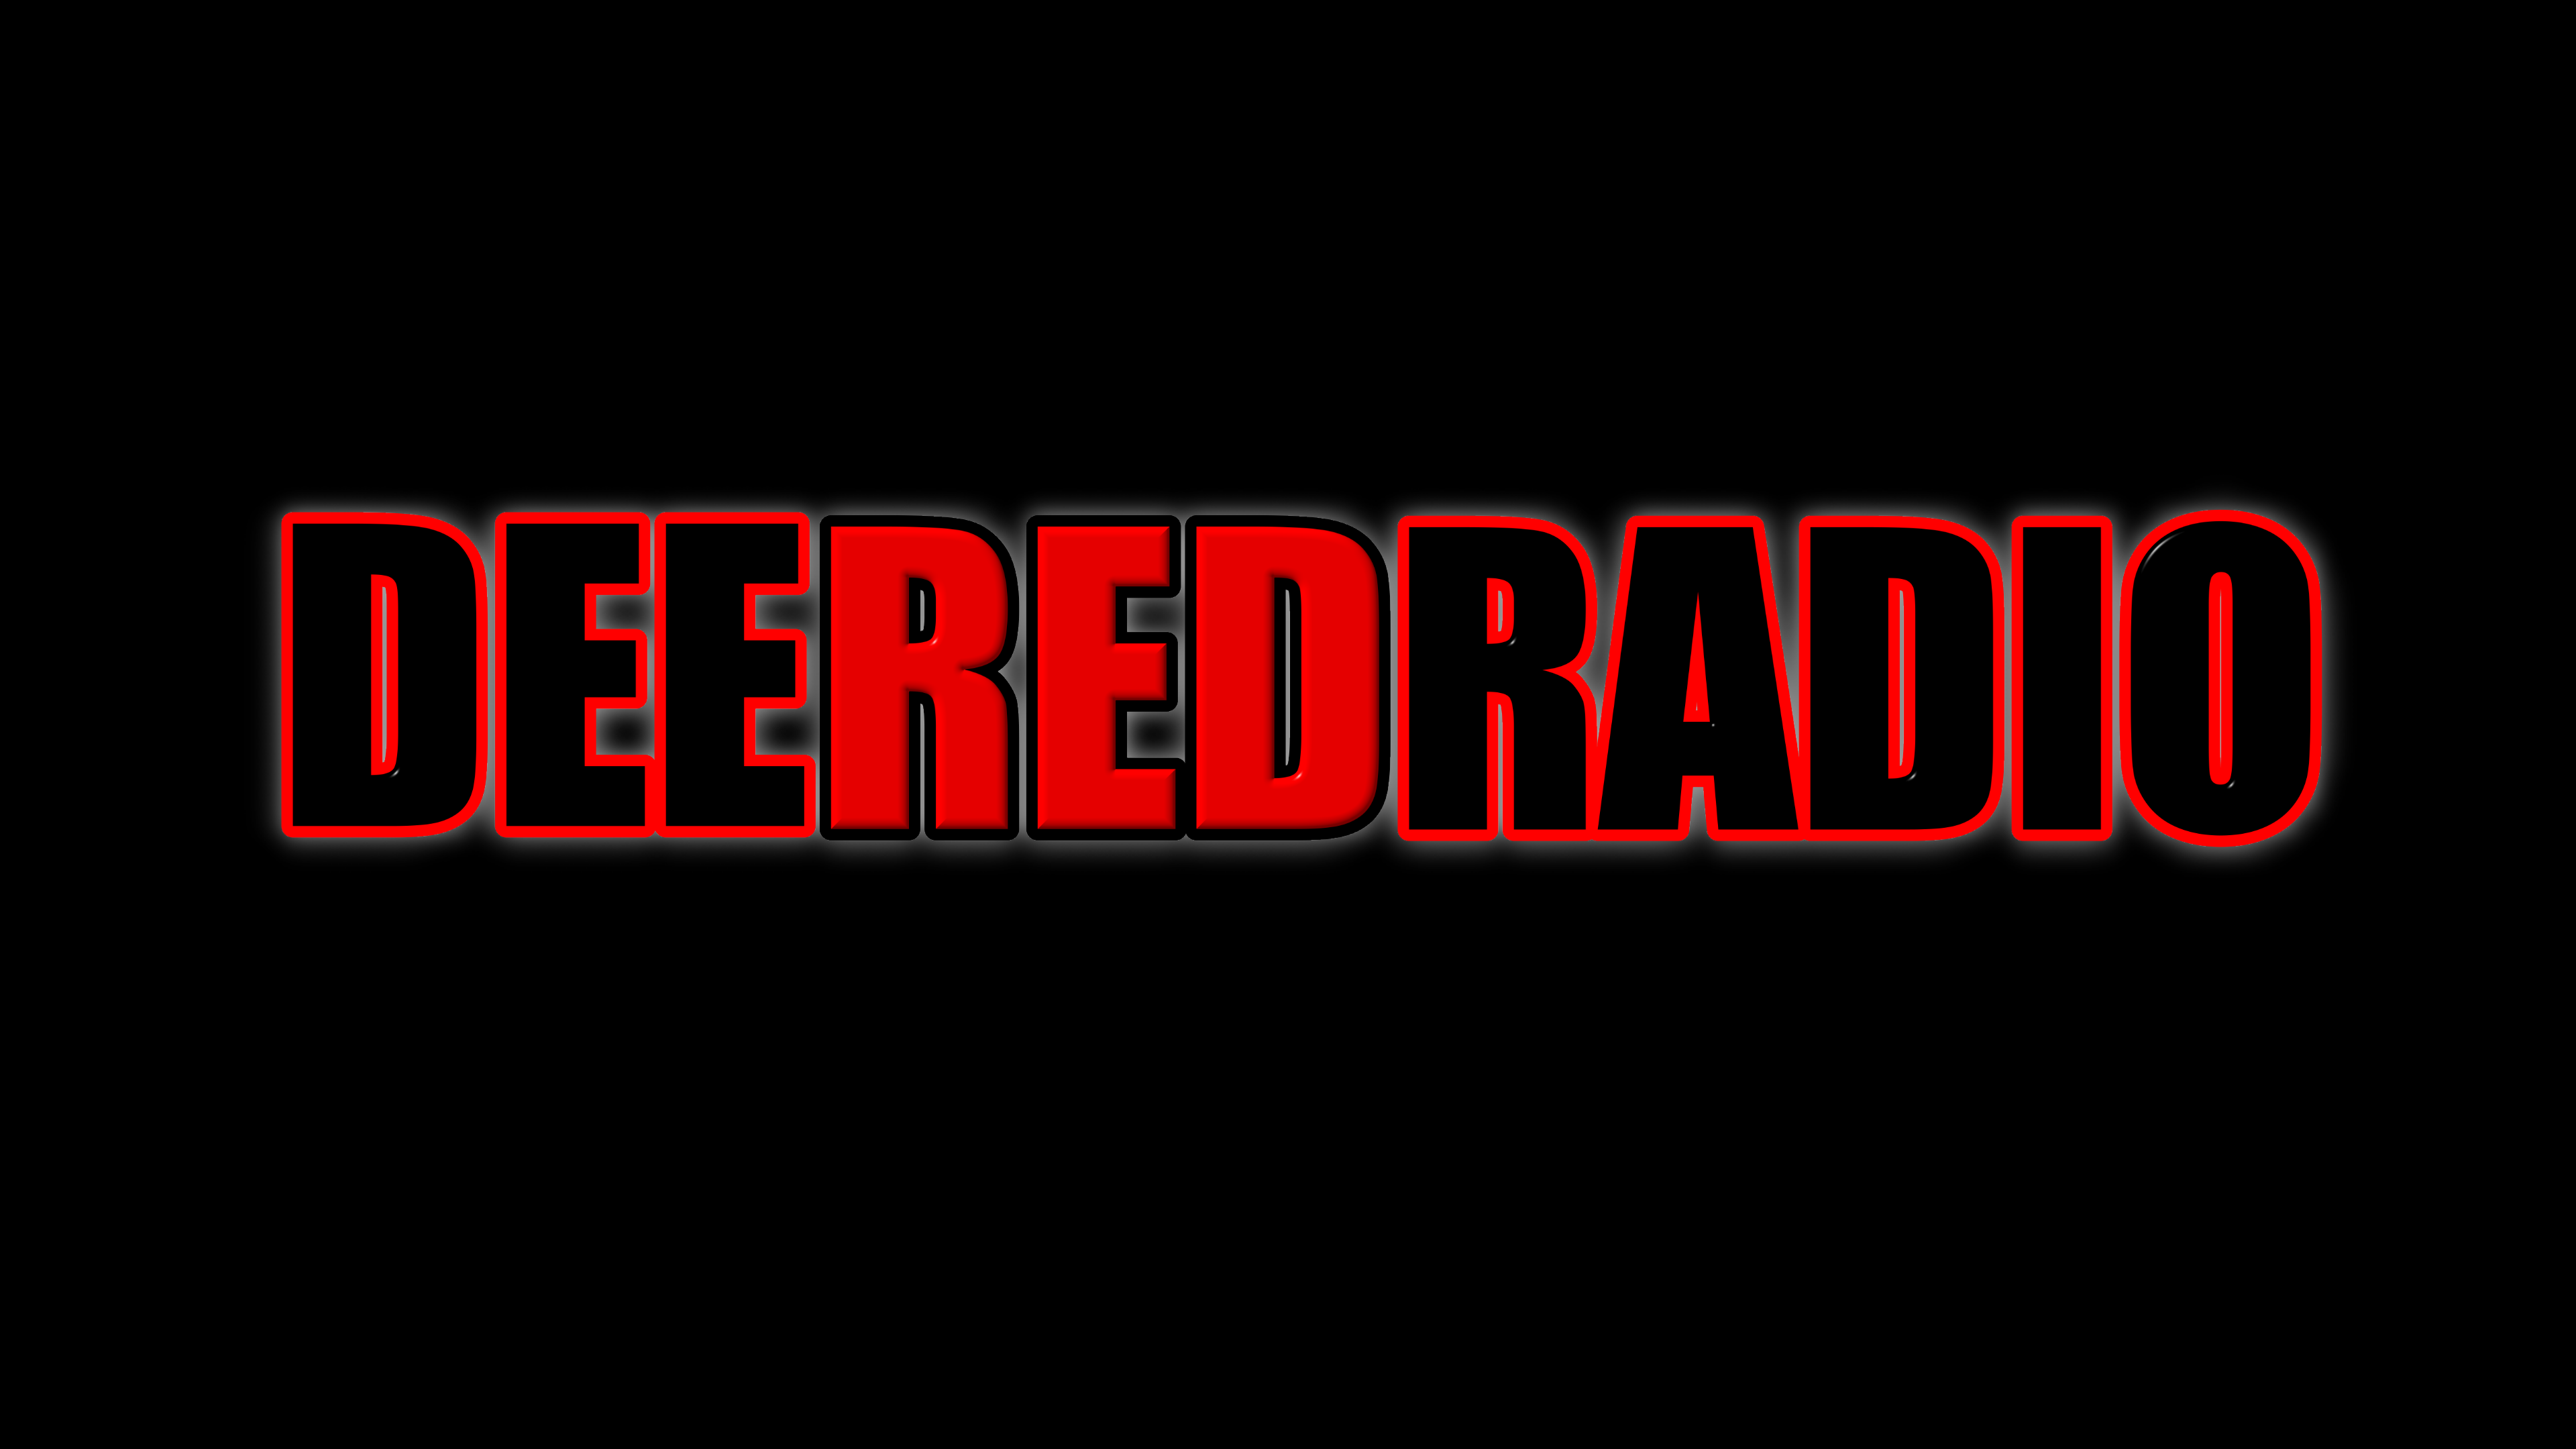 DeeRedRadio